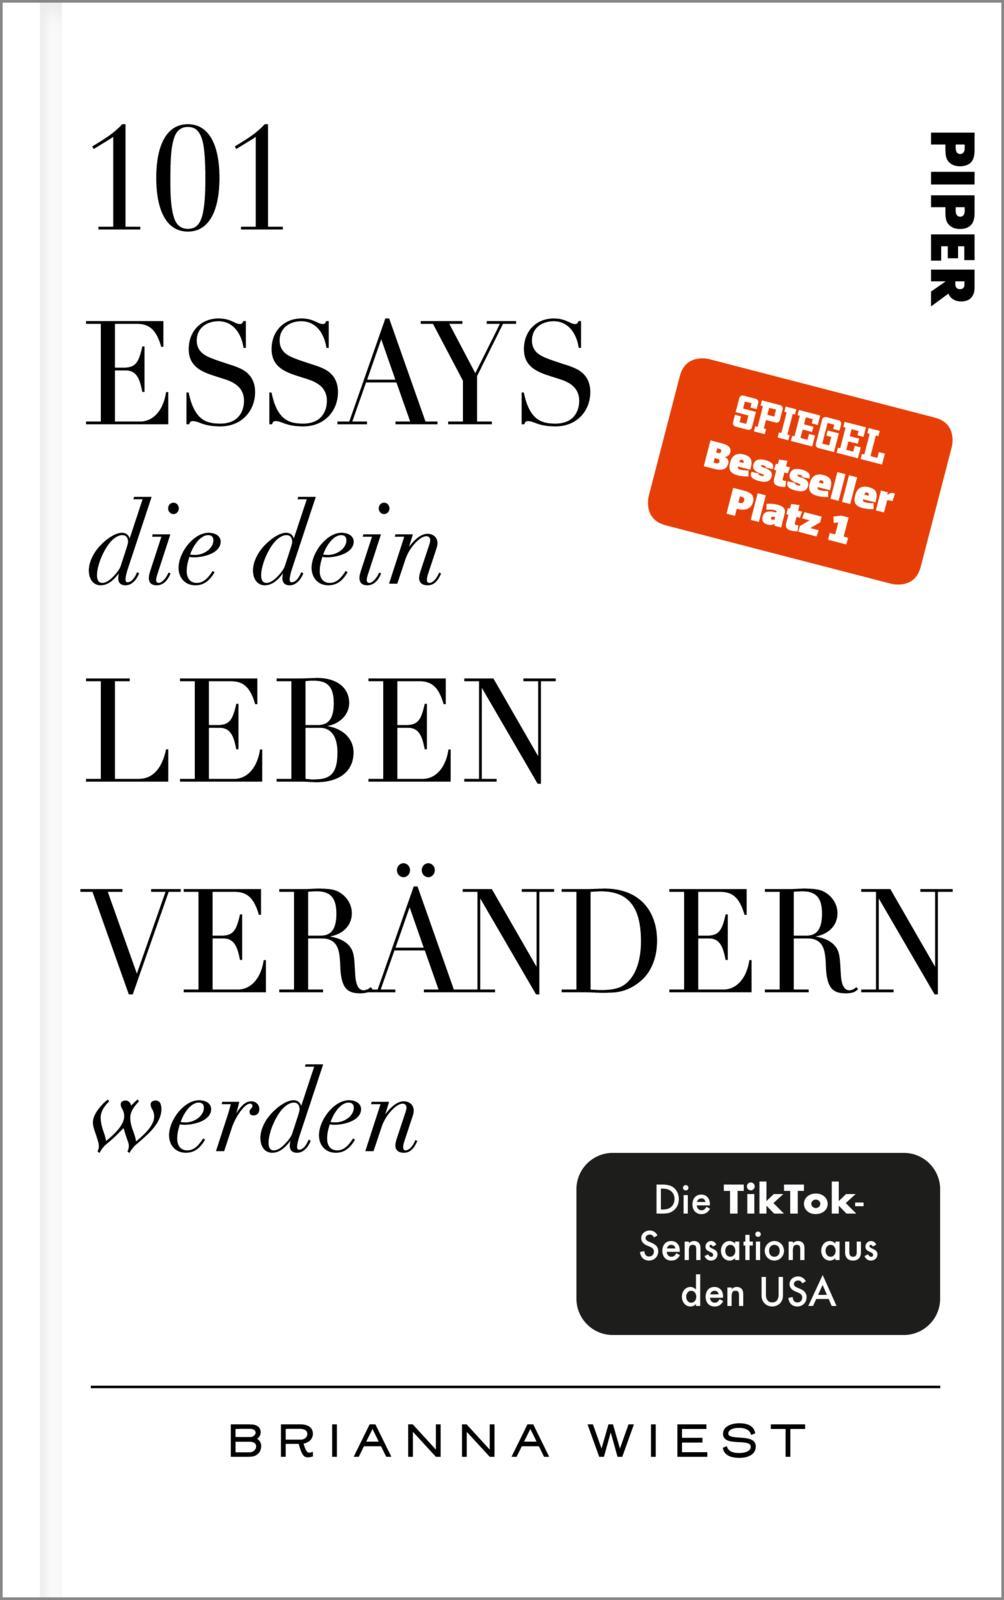 101 Essays, die dein Leben verändern werden Der SPIEGEL-Bestseller #1 | TikTok made me buy it